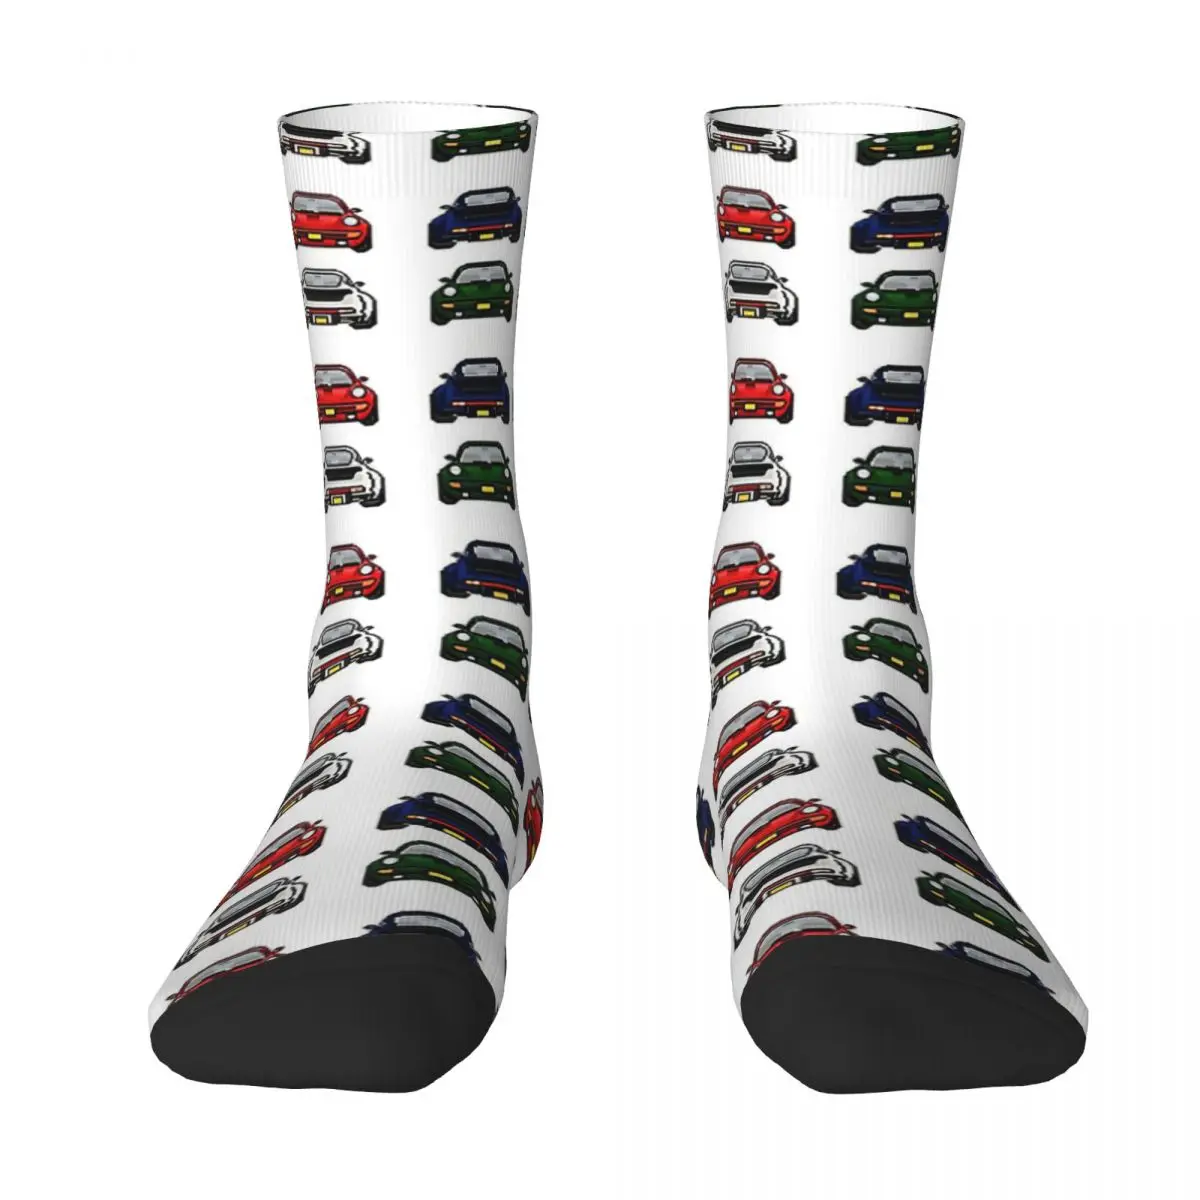 Porsche Adult Socks Unisex socks,men Socks women Socks